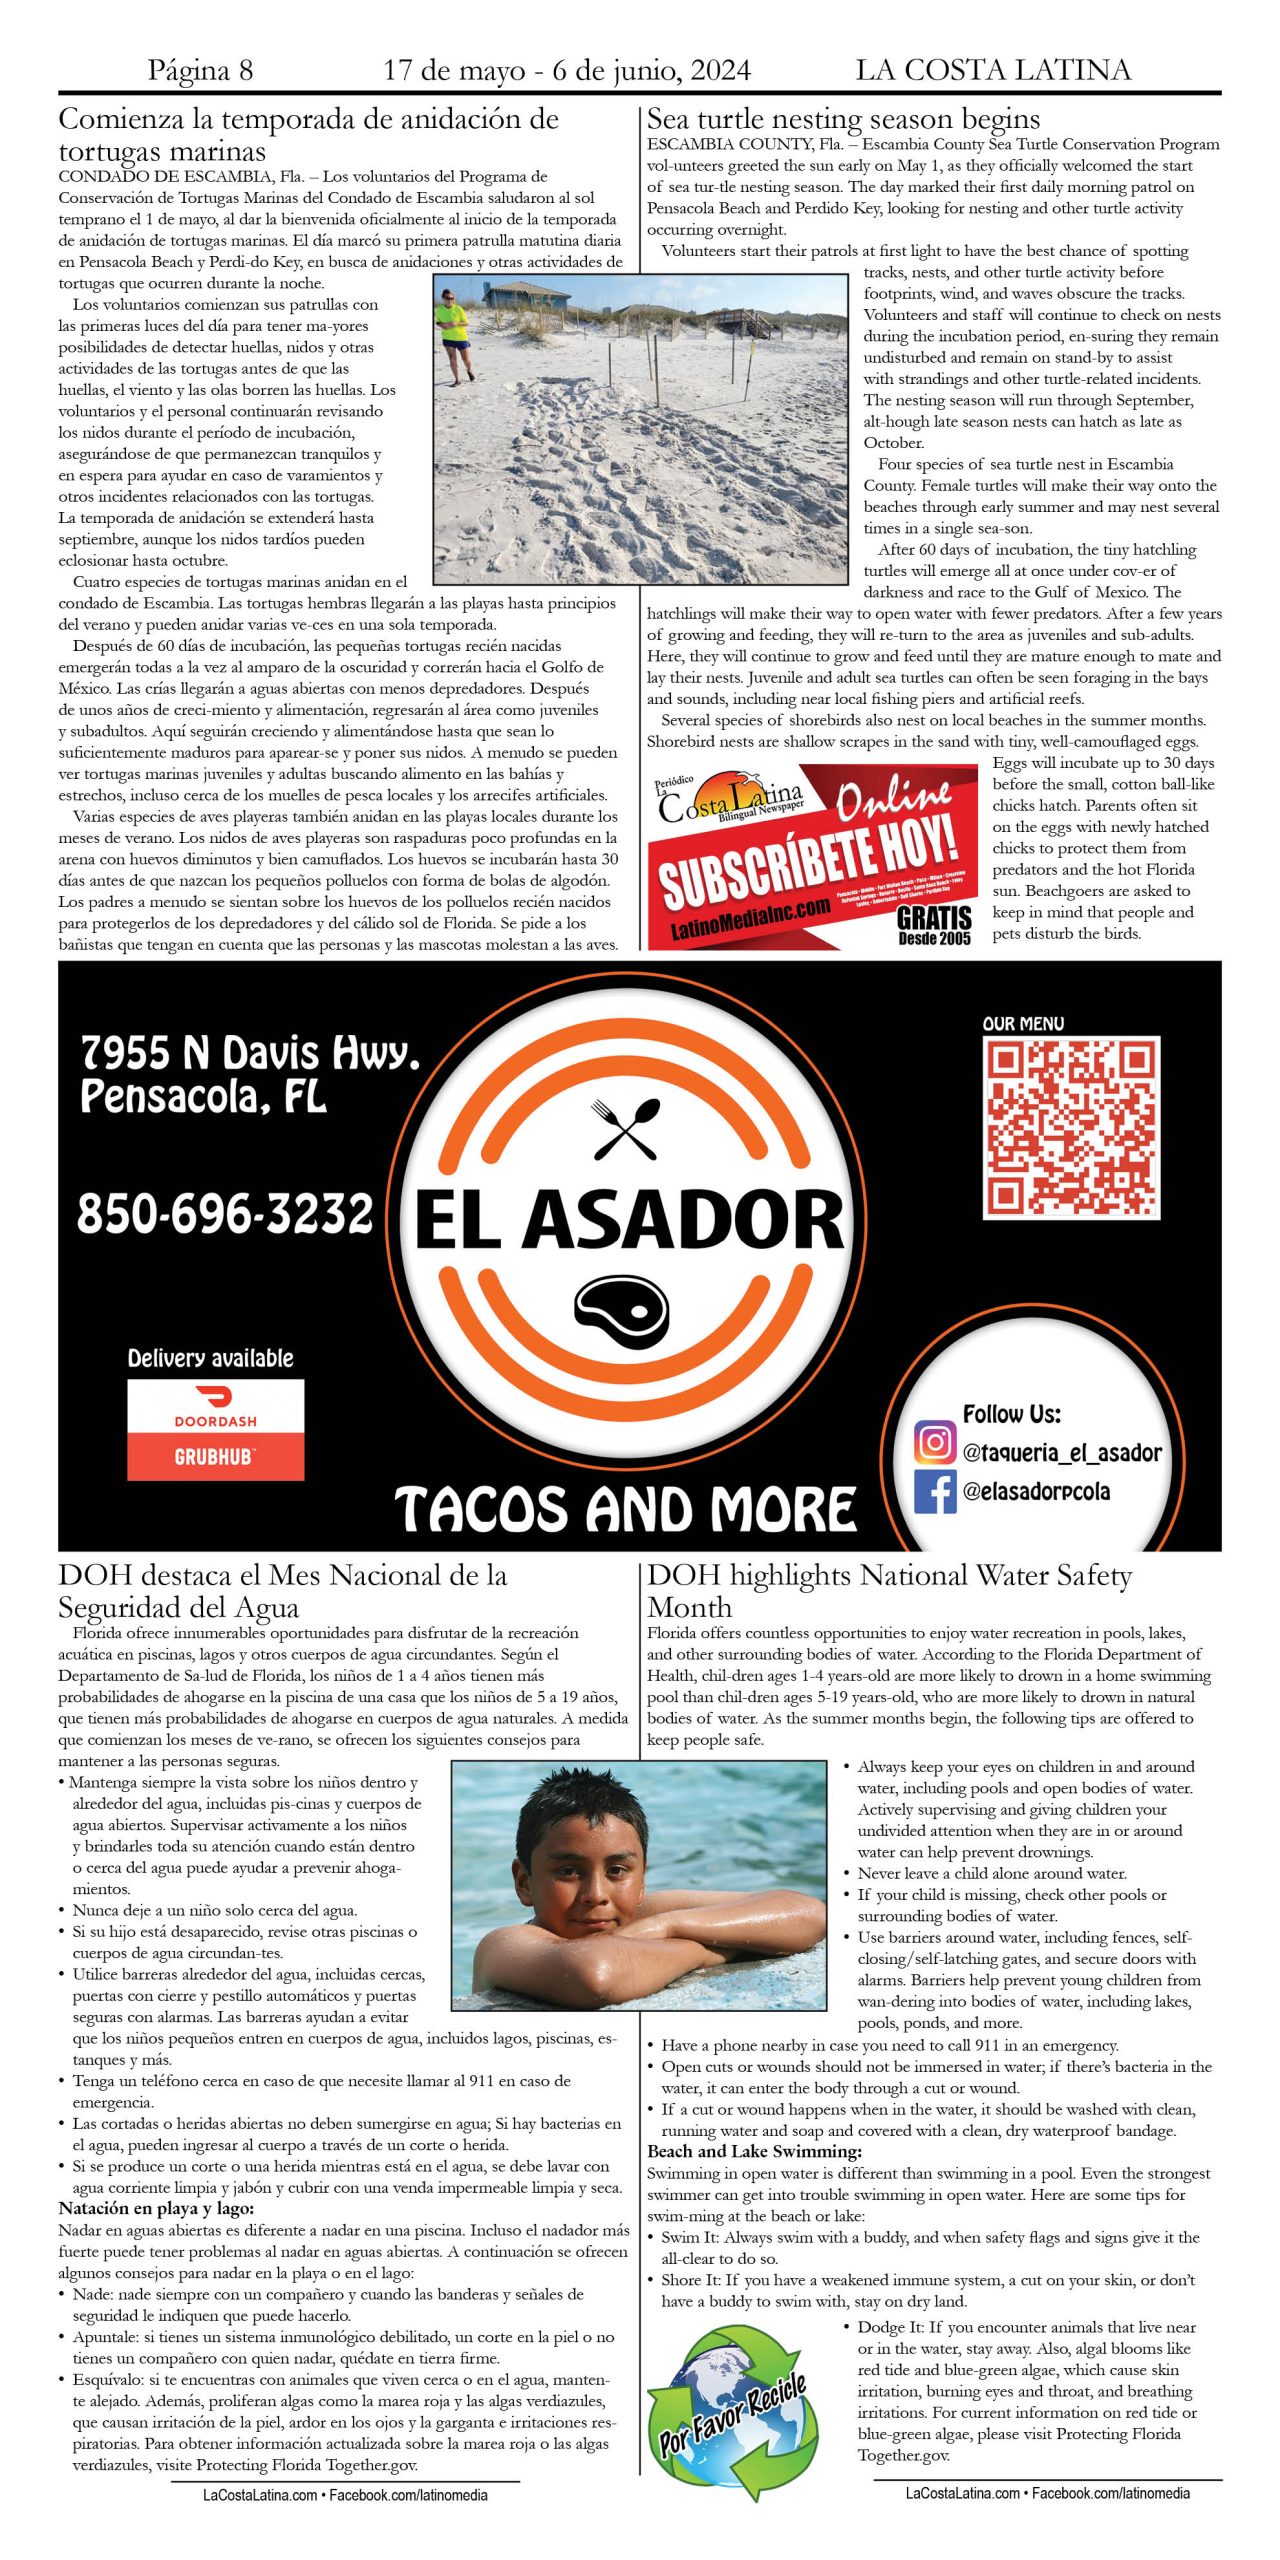 La Costa Latina May 17 - June 7, 2024 page 8